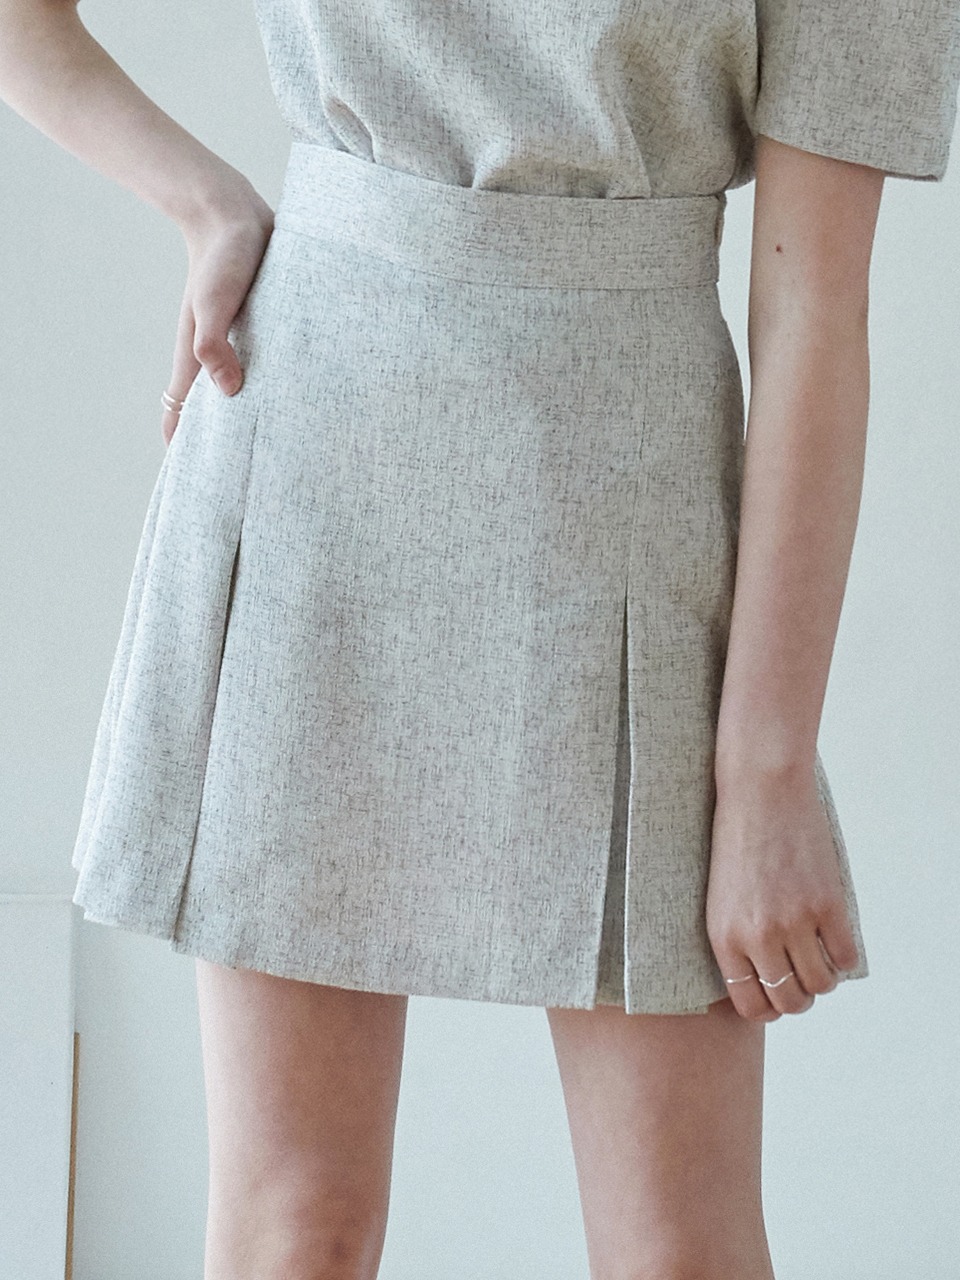 j775 tweed slit mini skirt (ivory)